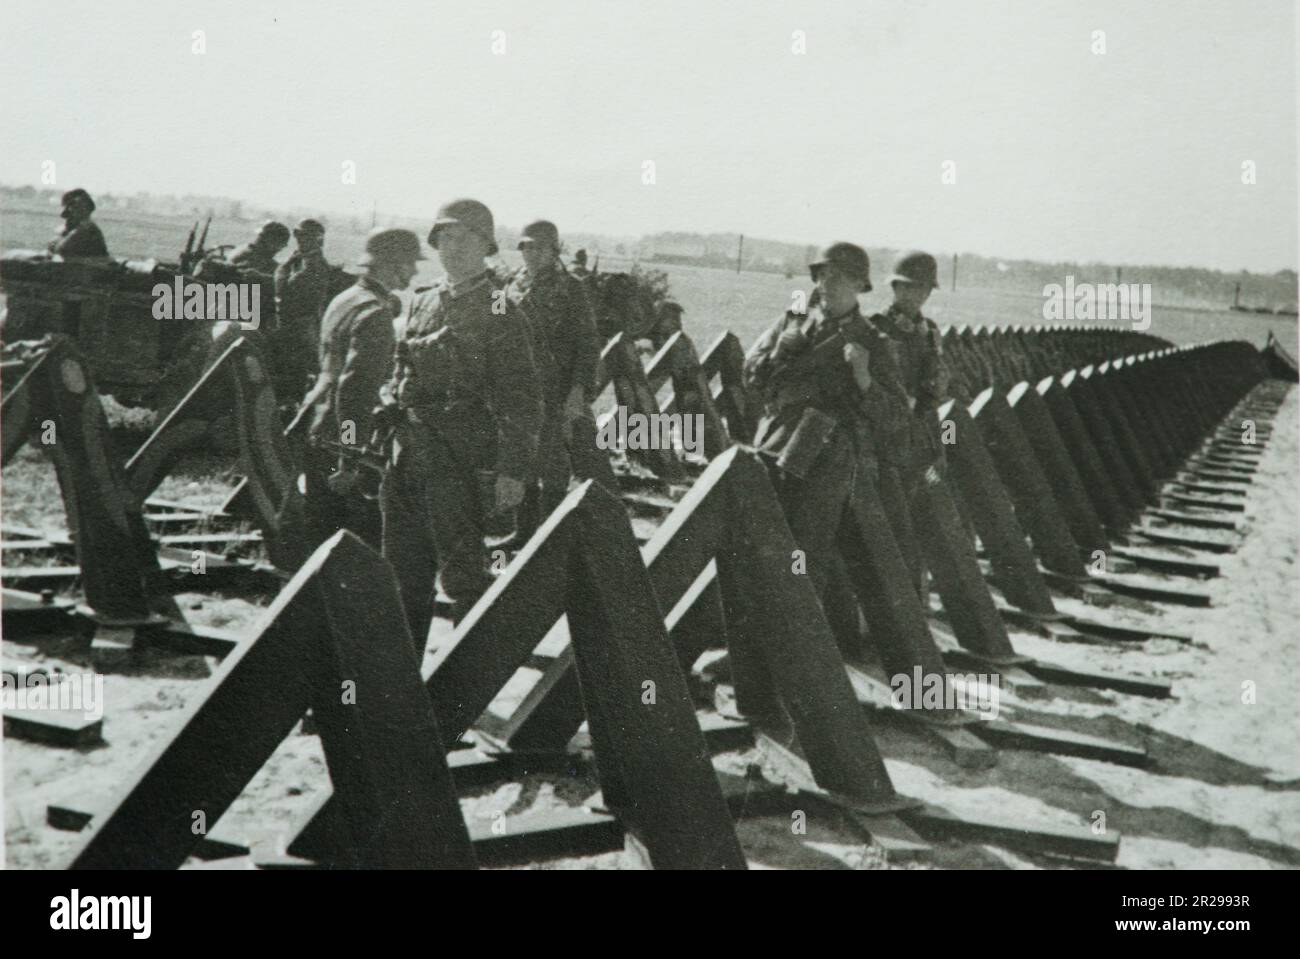 WW2 - Seconde Guerre mondiale, deuxième guerre mondiale, barrière antichar allemande en Belgique - 1940 Banque D'Images